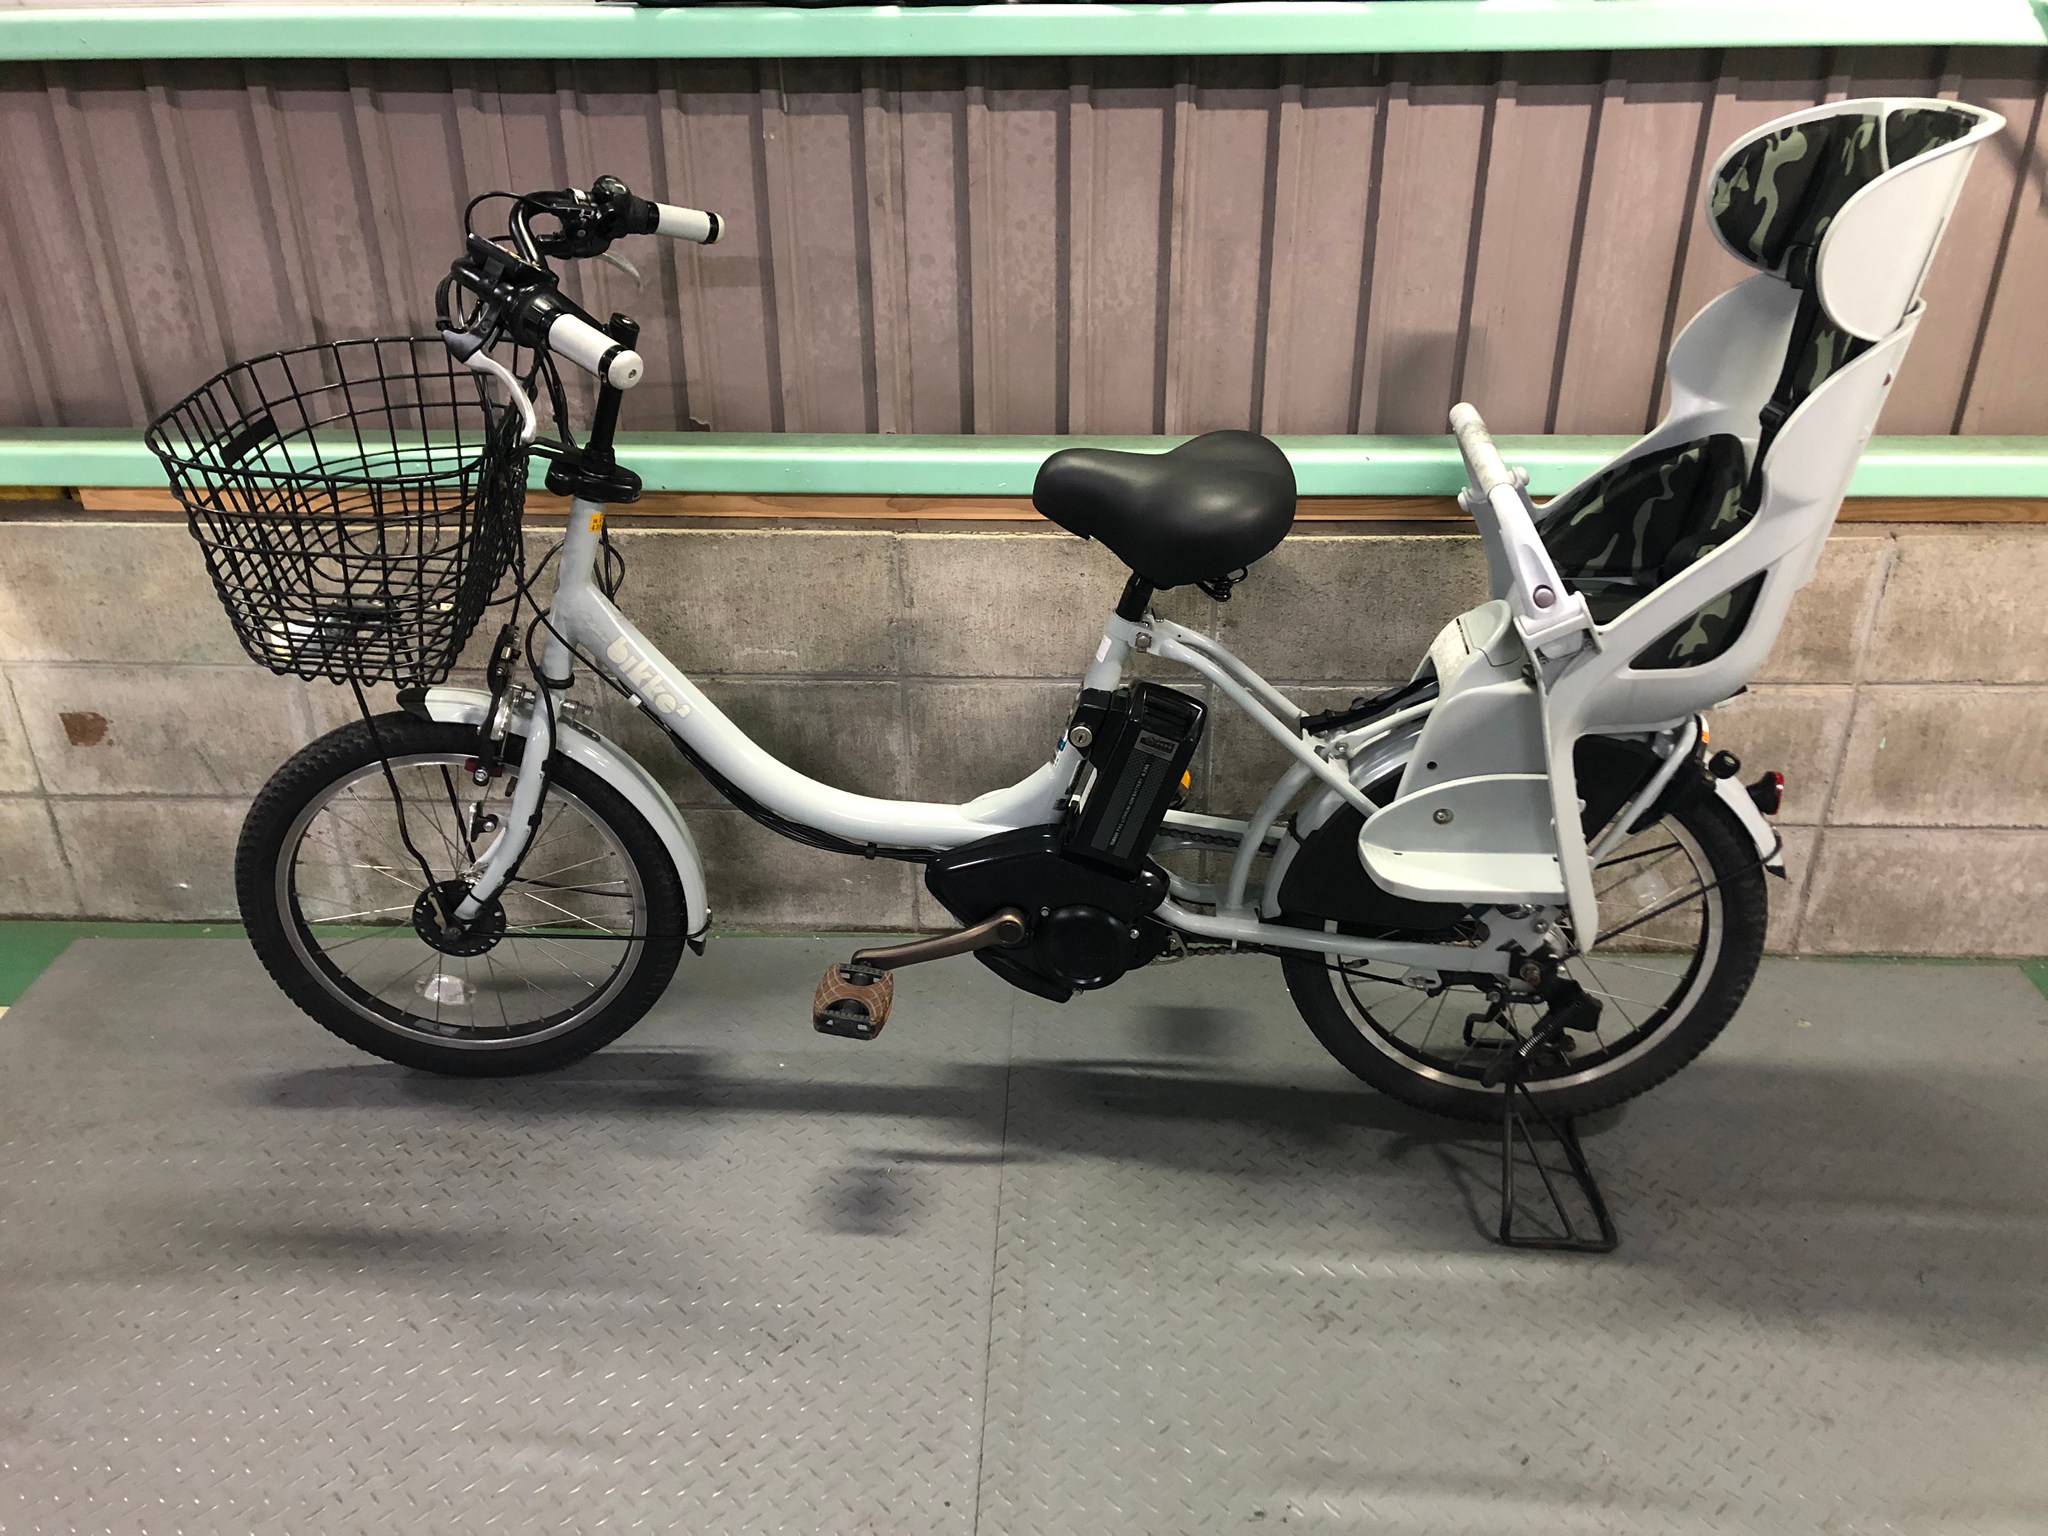 37950円 安い 電動自転車 子供乗せ bikke 2 ビッケ ツー ホワイト 20インチ